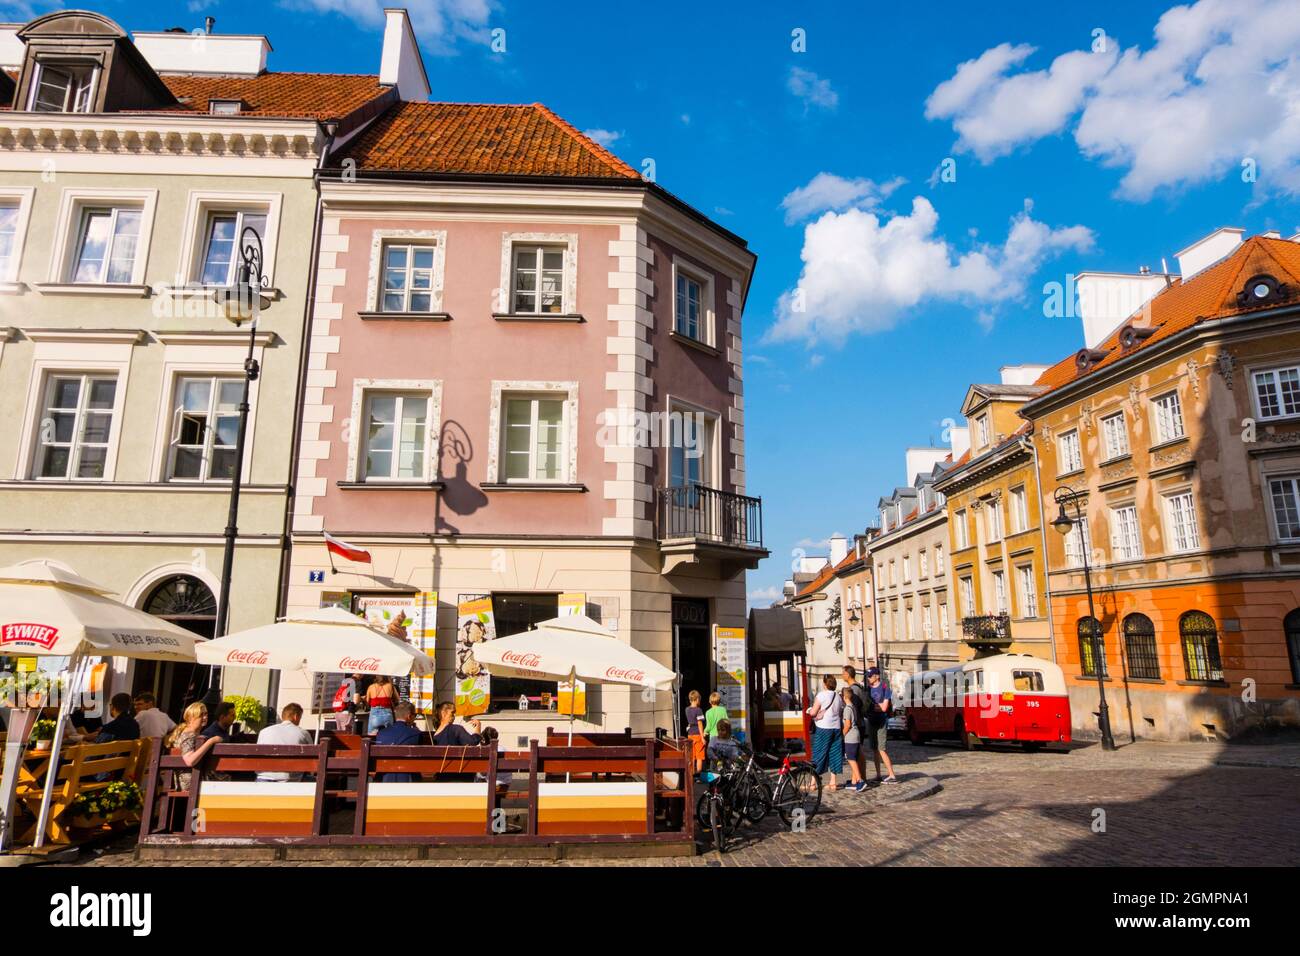 Freta and Mostowa streets, Nowe Miasto, new town, Warsaw, Poland Stock Photo